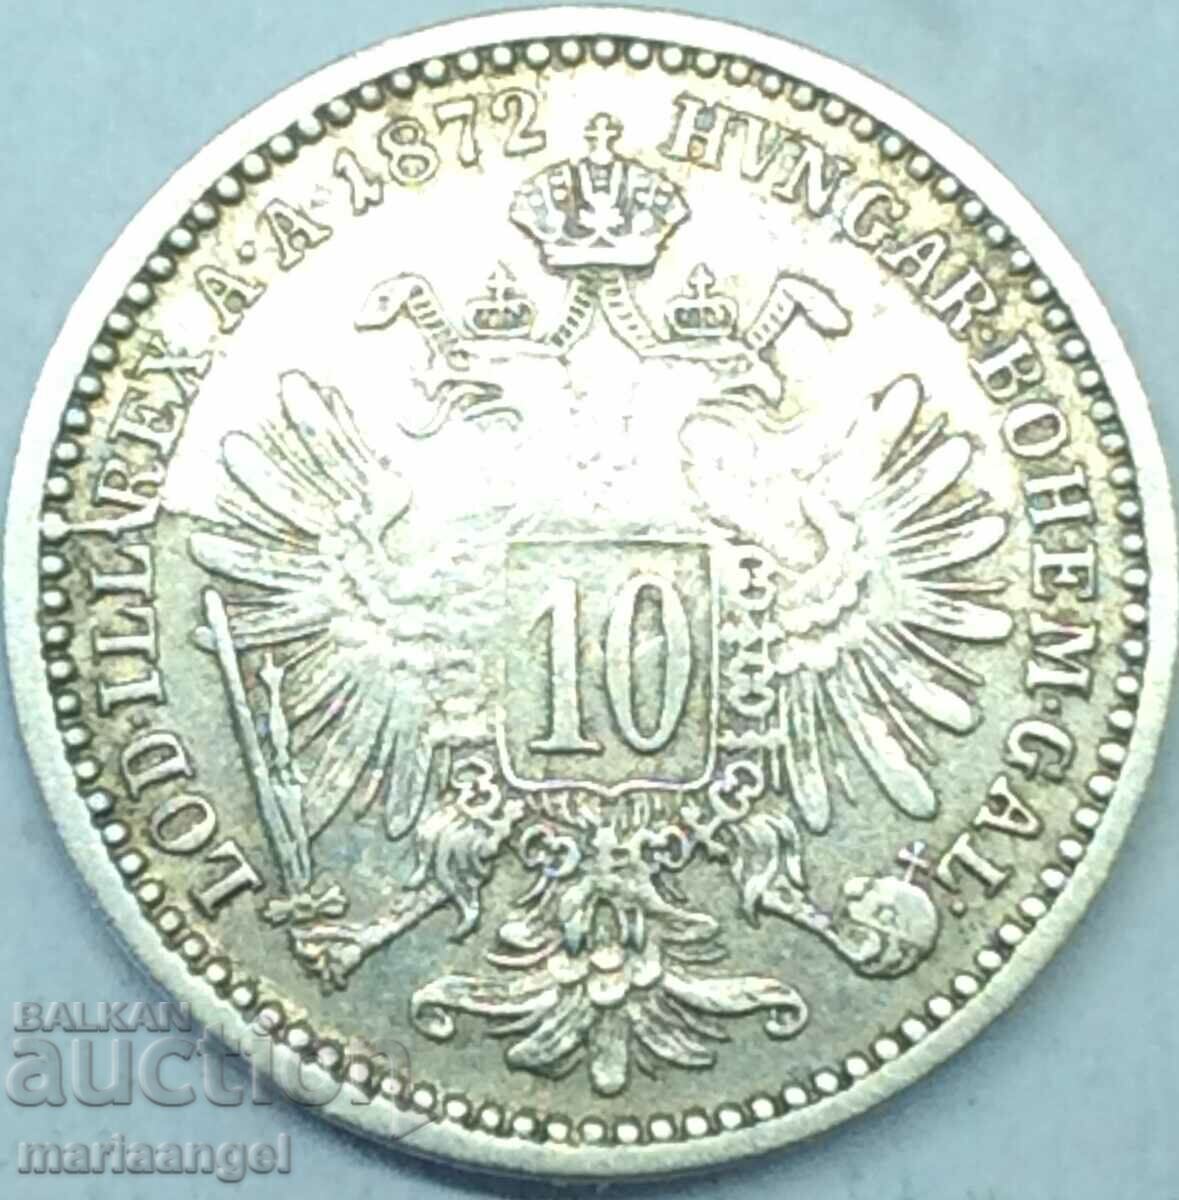 Austria 10 Kreuzer 1872 imp. Franz Joseph silver